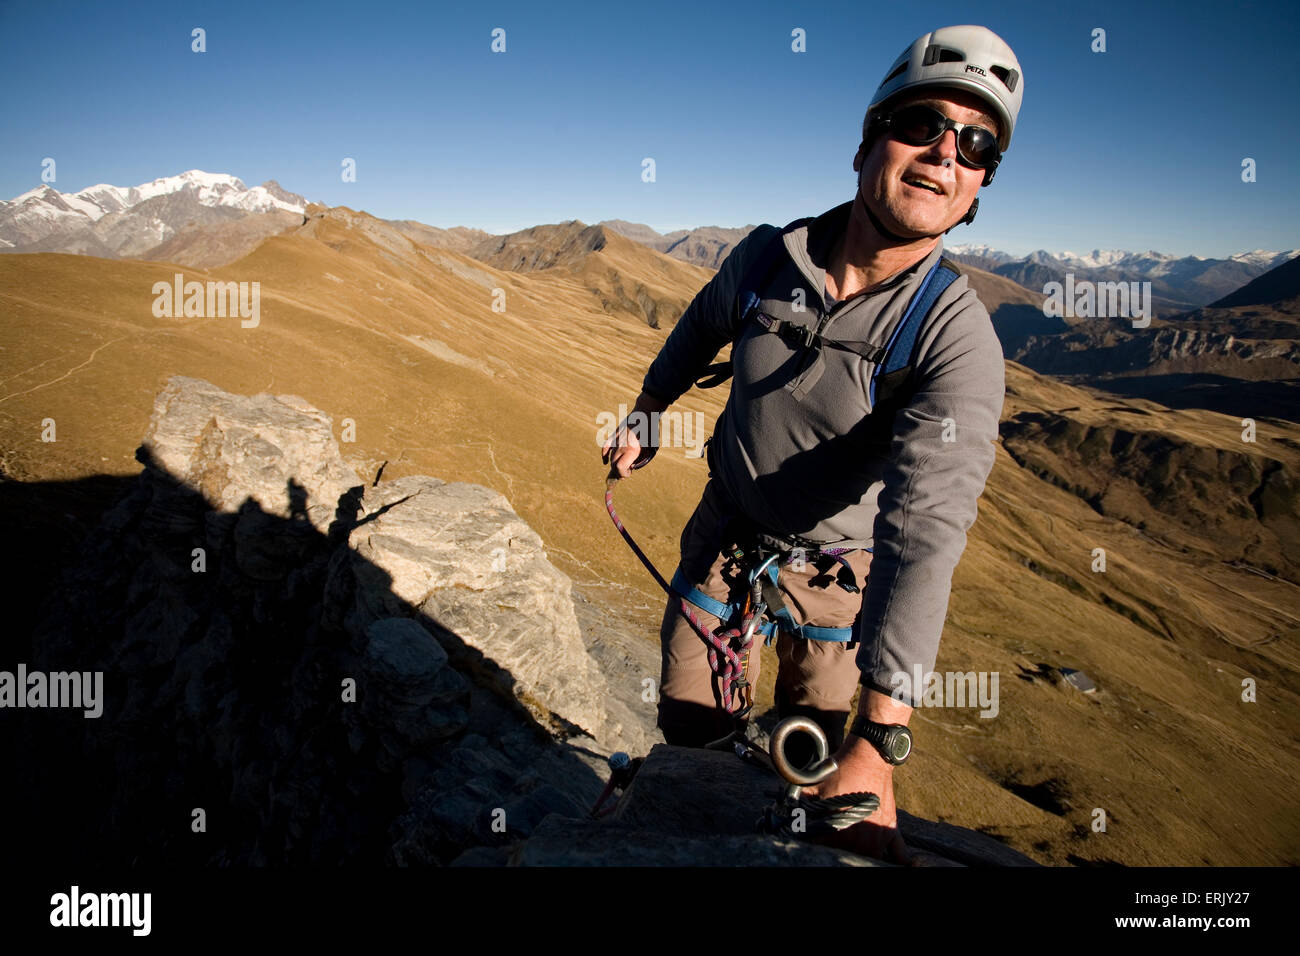 Un homme s'engager dans le sport de la Via Ferrata dans les Alpes françaises. Banque D'Images